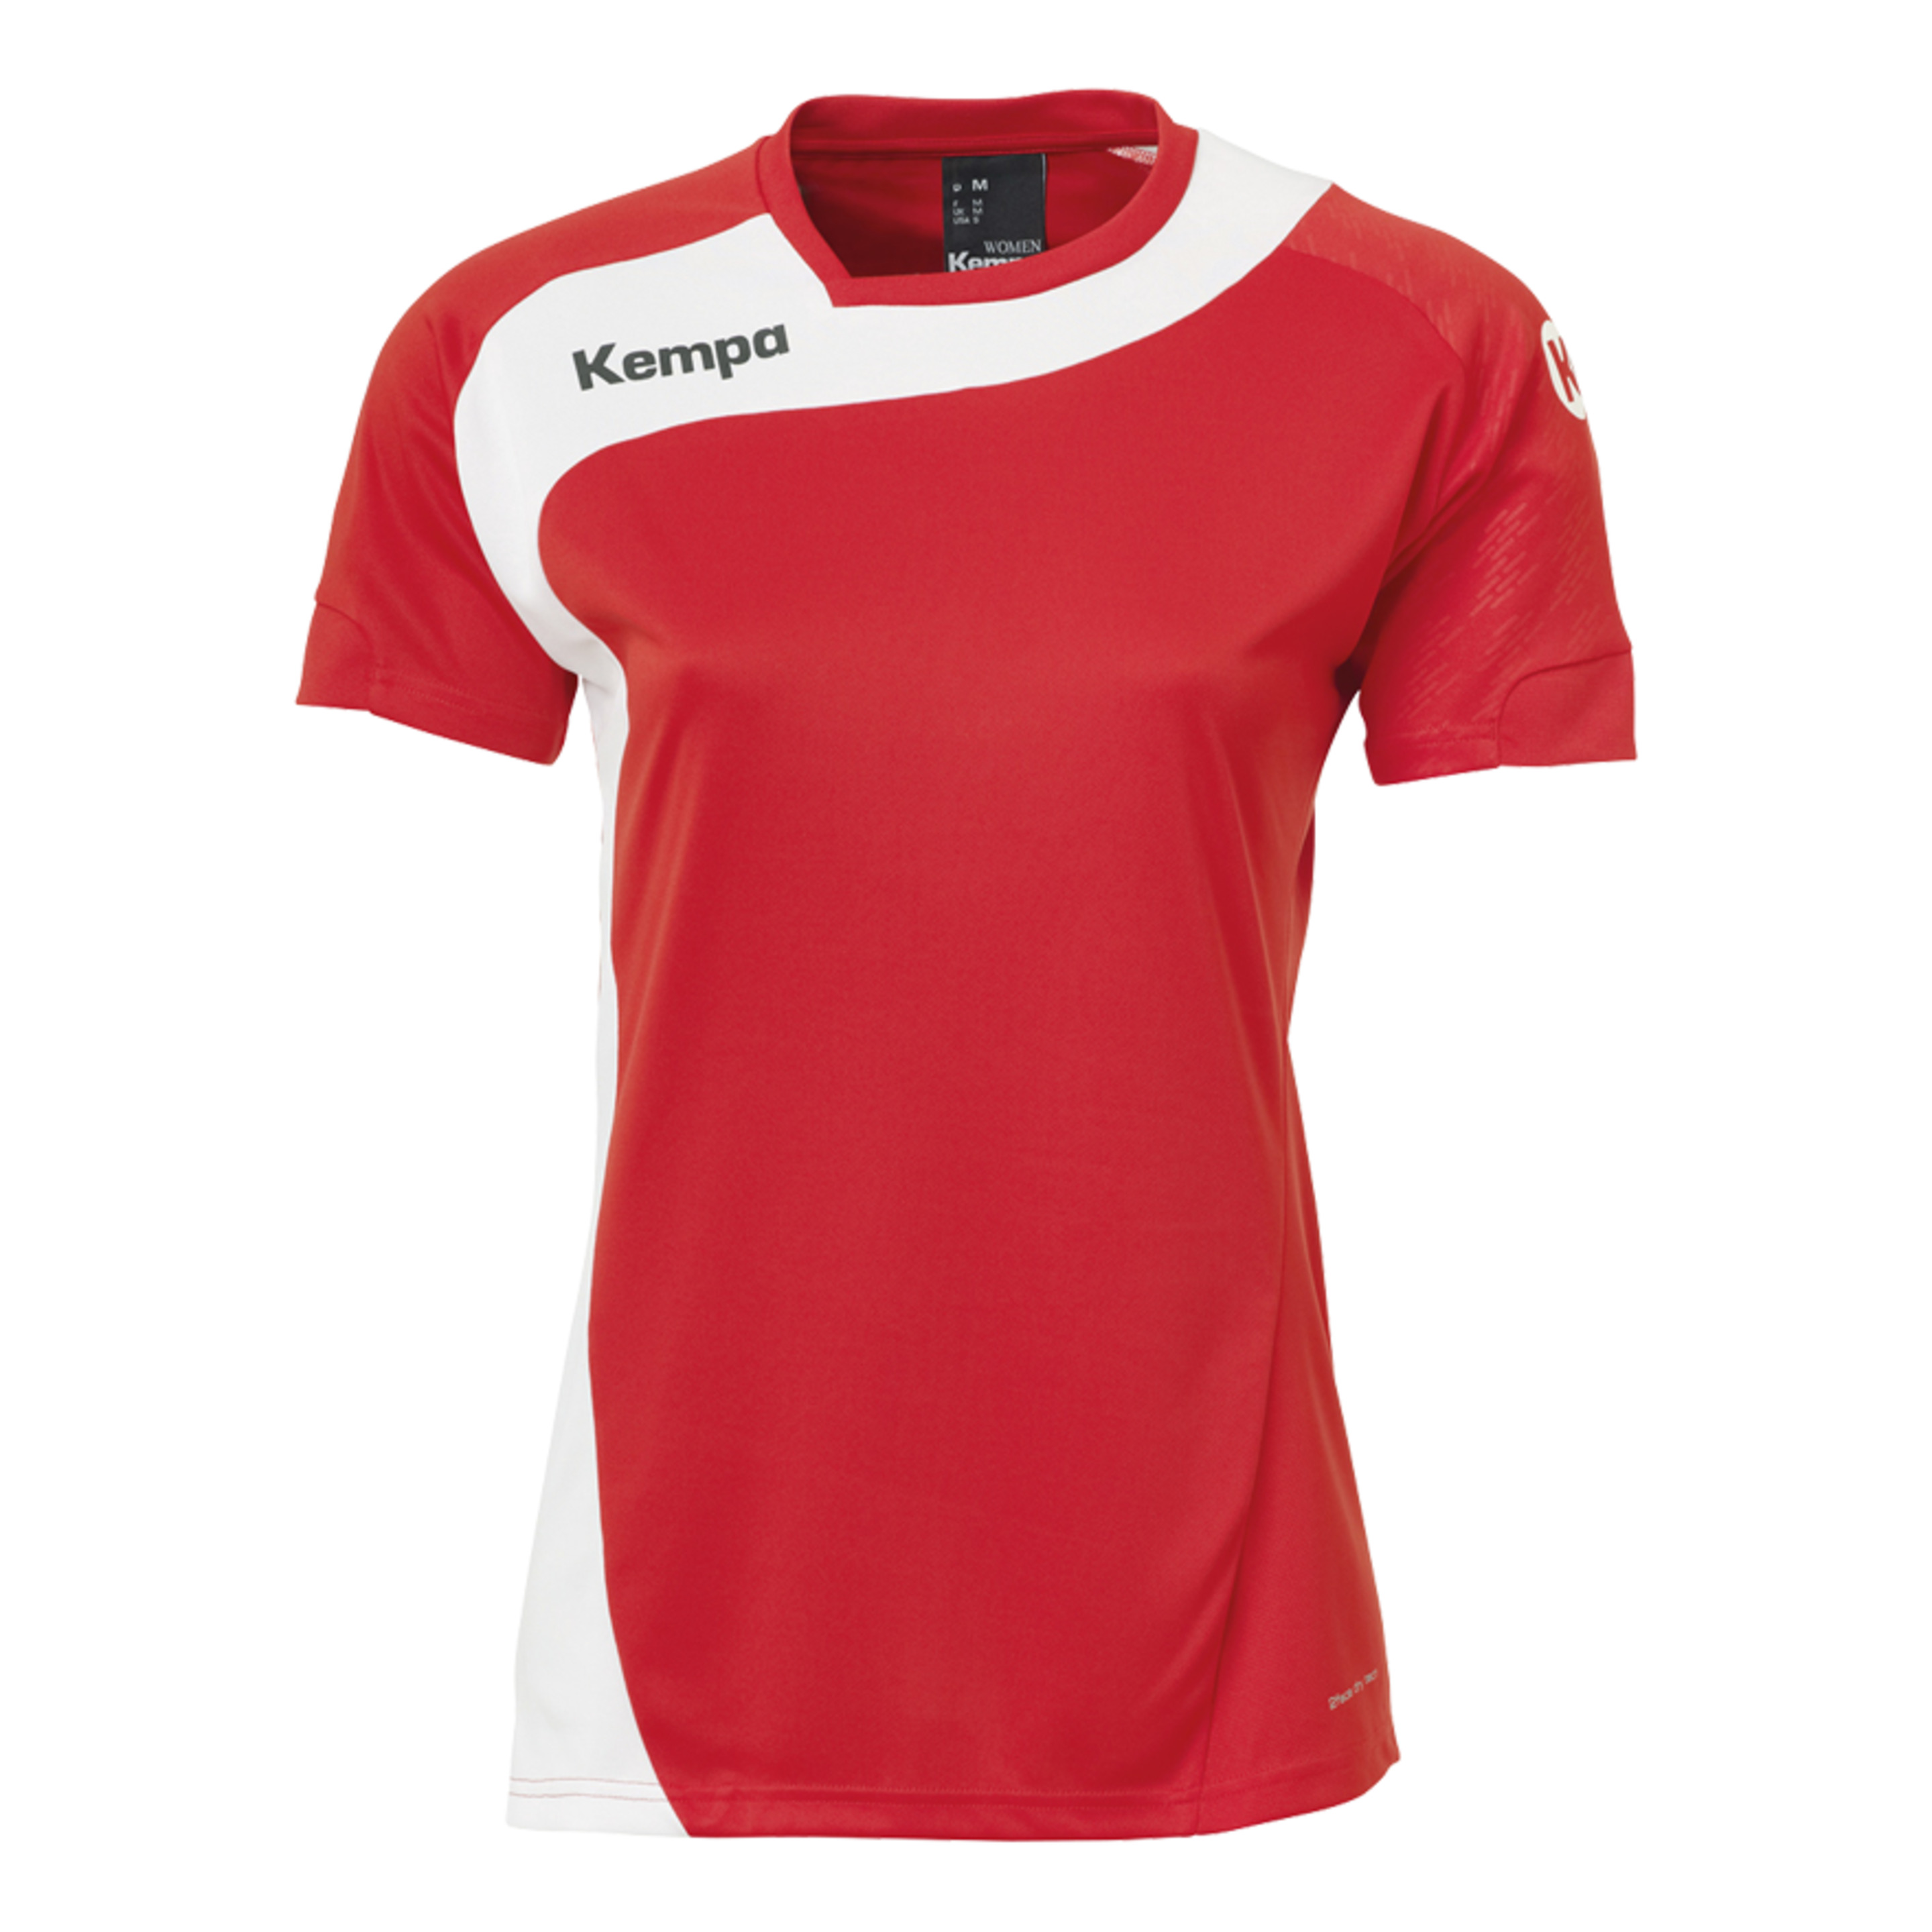 Peak Camiseta De Mujer Rojo/blanco Kempa - rojo - Peak Camiseta De Mujer Rojo/blanco Kempa  MKP